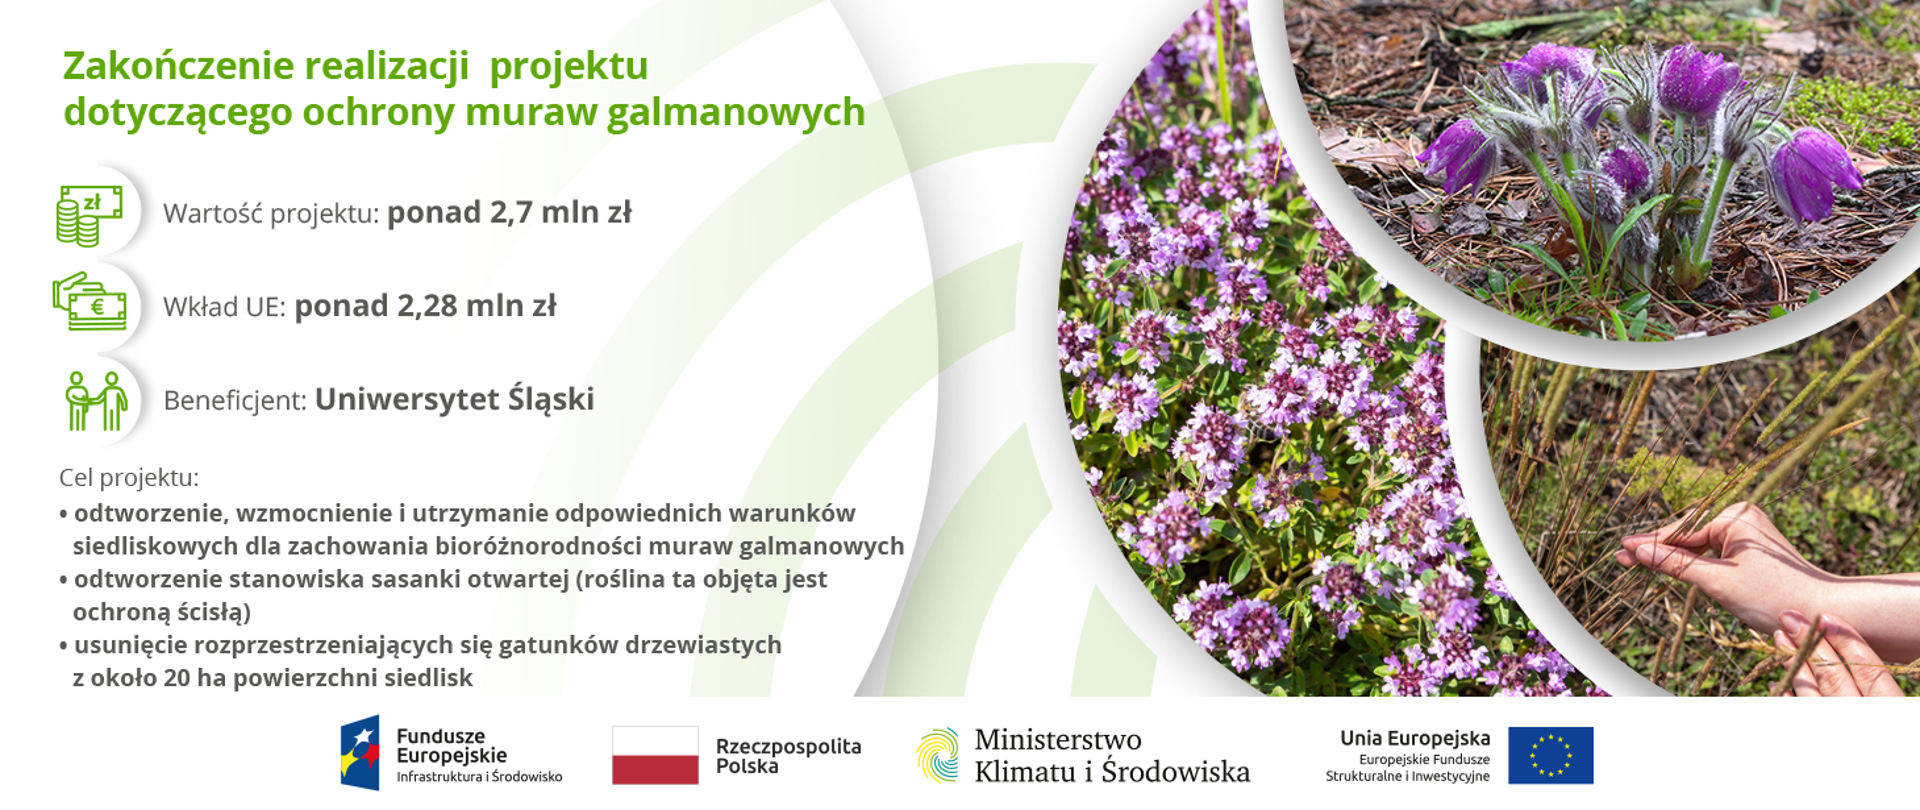 Zakończenie realizacji projektu pn.: „Dobre praktyki dla wzmacniania bioróżnorodności i aktywnej ochrony muraw galmanowych rejonu śląsko-krakowskiego BioGalmany”